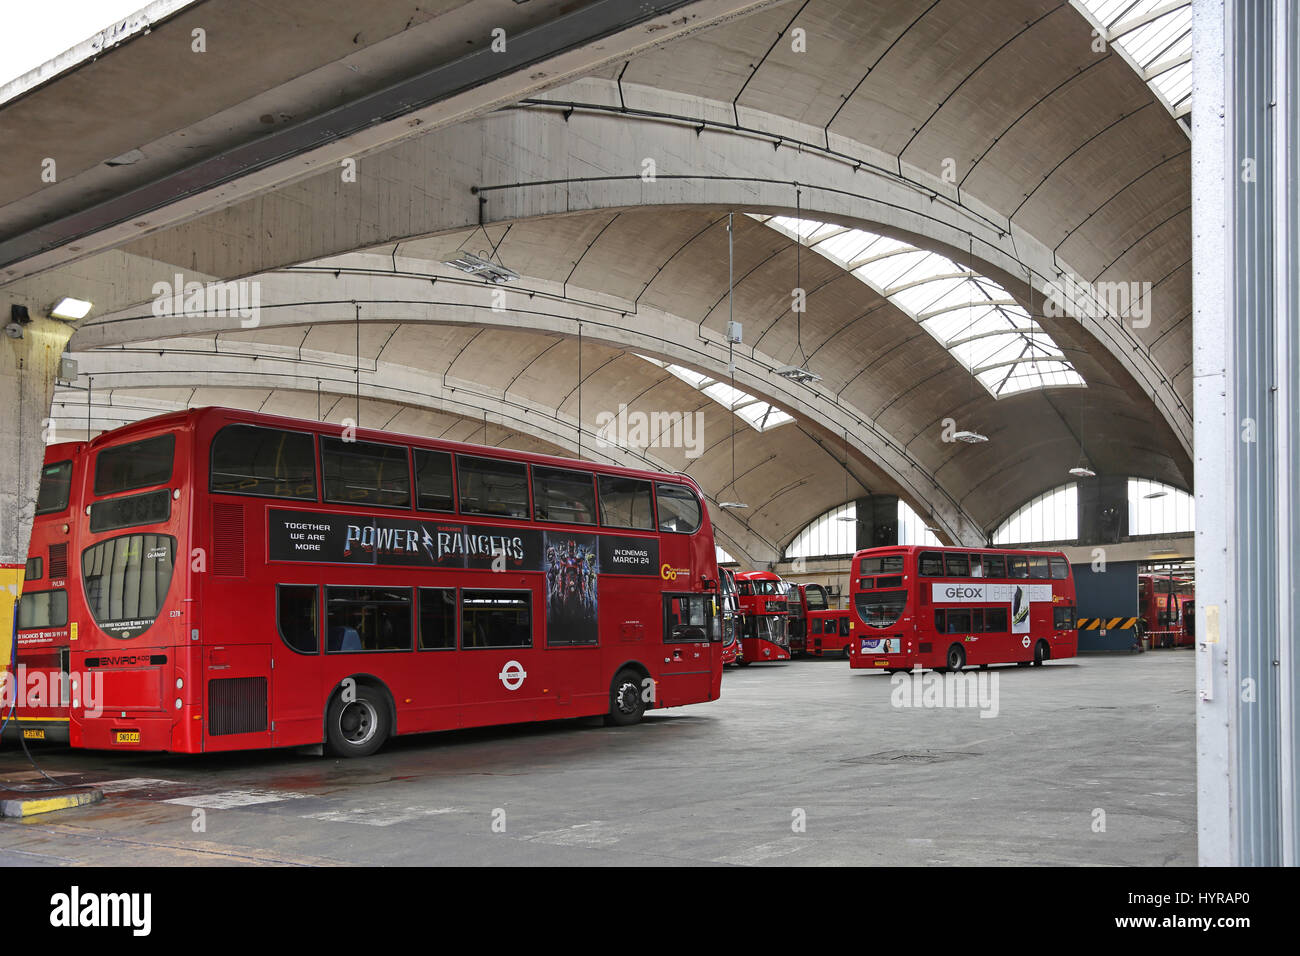 Stockwell Bus Garage, dans le sud de Londres, au Royaume-Uni. Le célèbre toit de béton s'étend sur 59m et a été le plus grand d'Europe lors de sa construction en 1952. Classé grade II maintenant. Banque D'Images